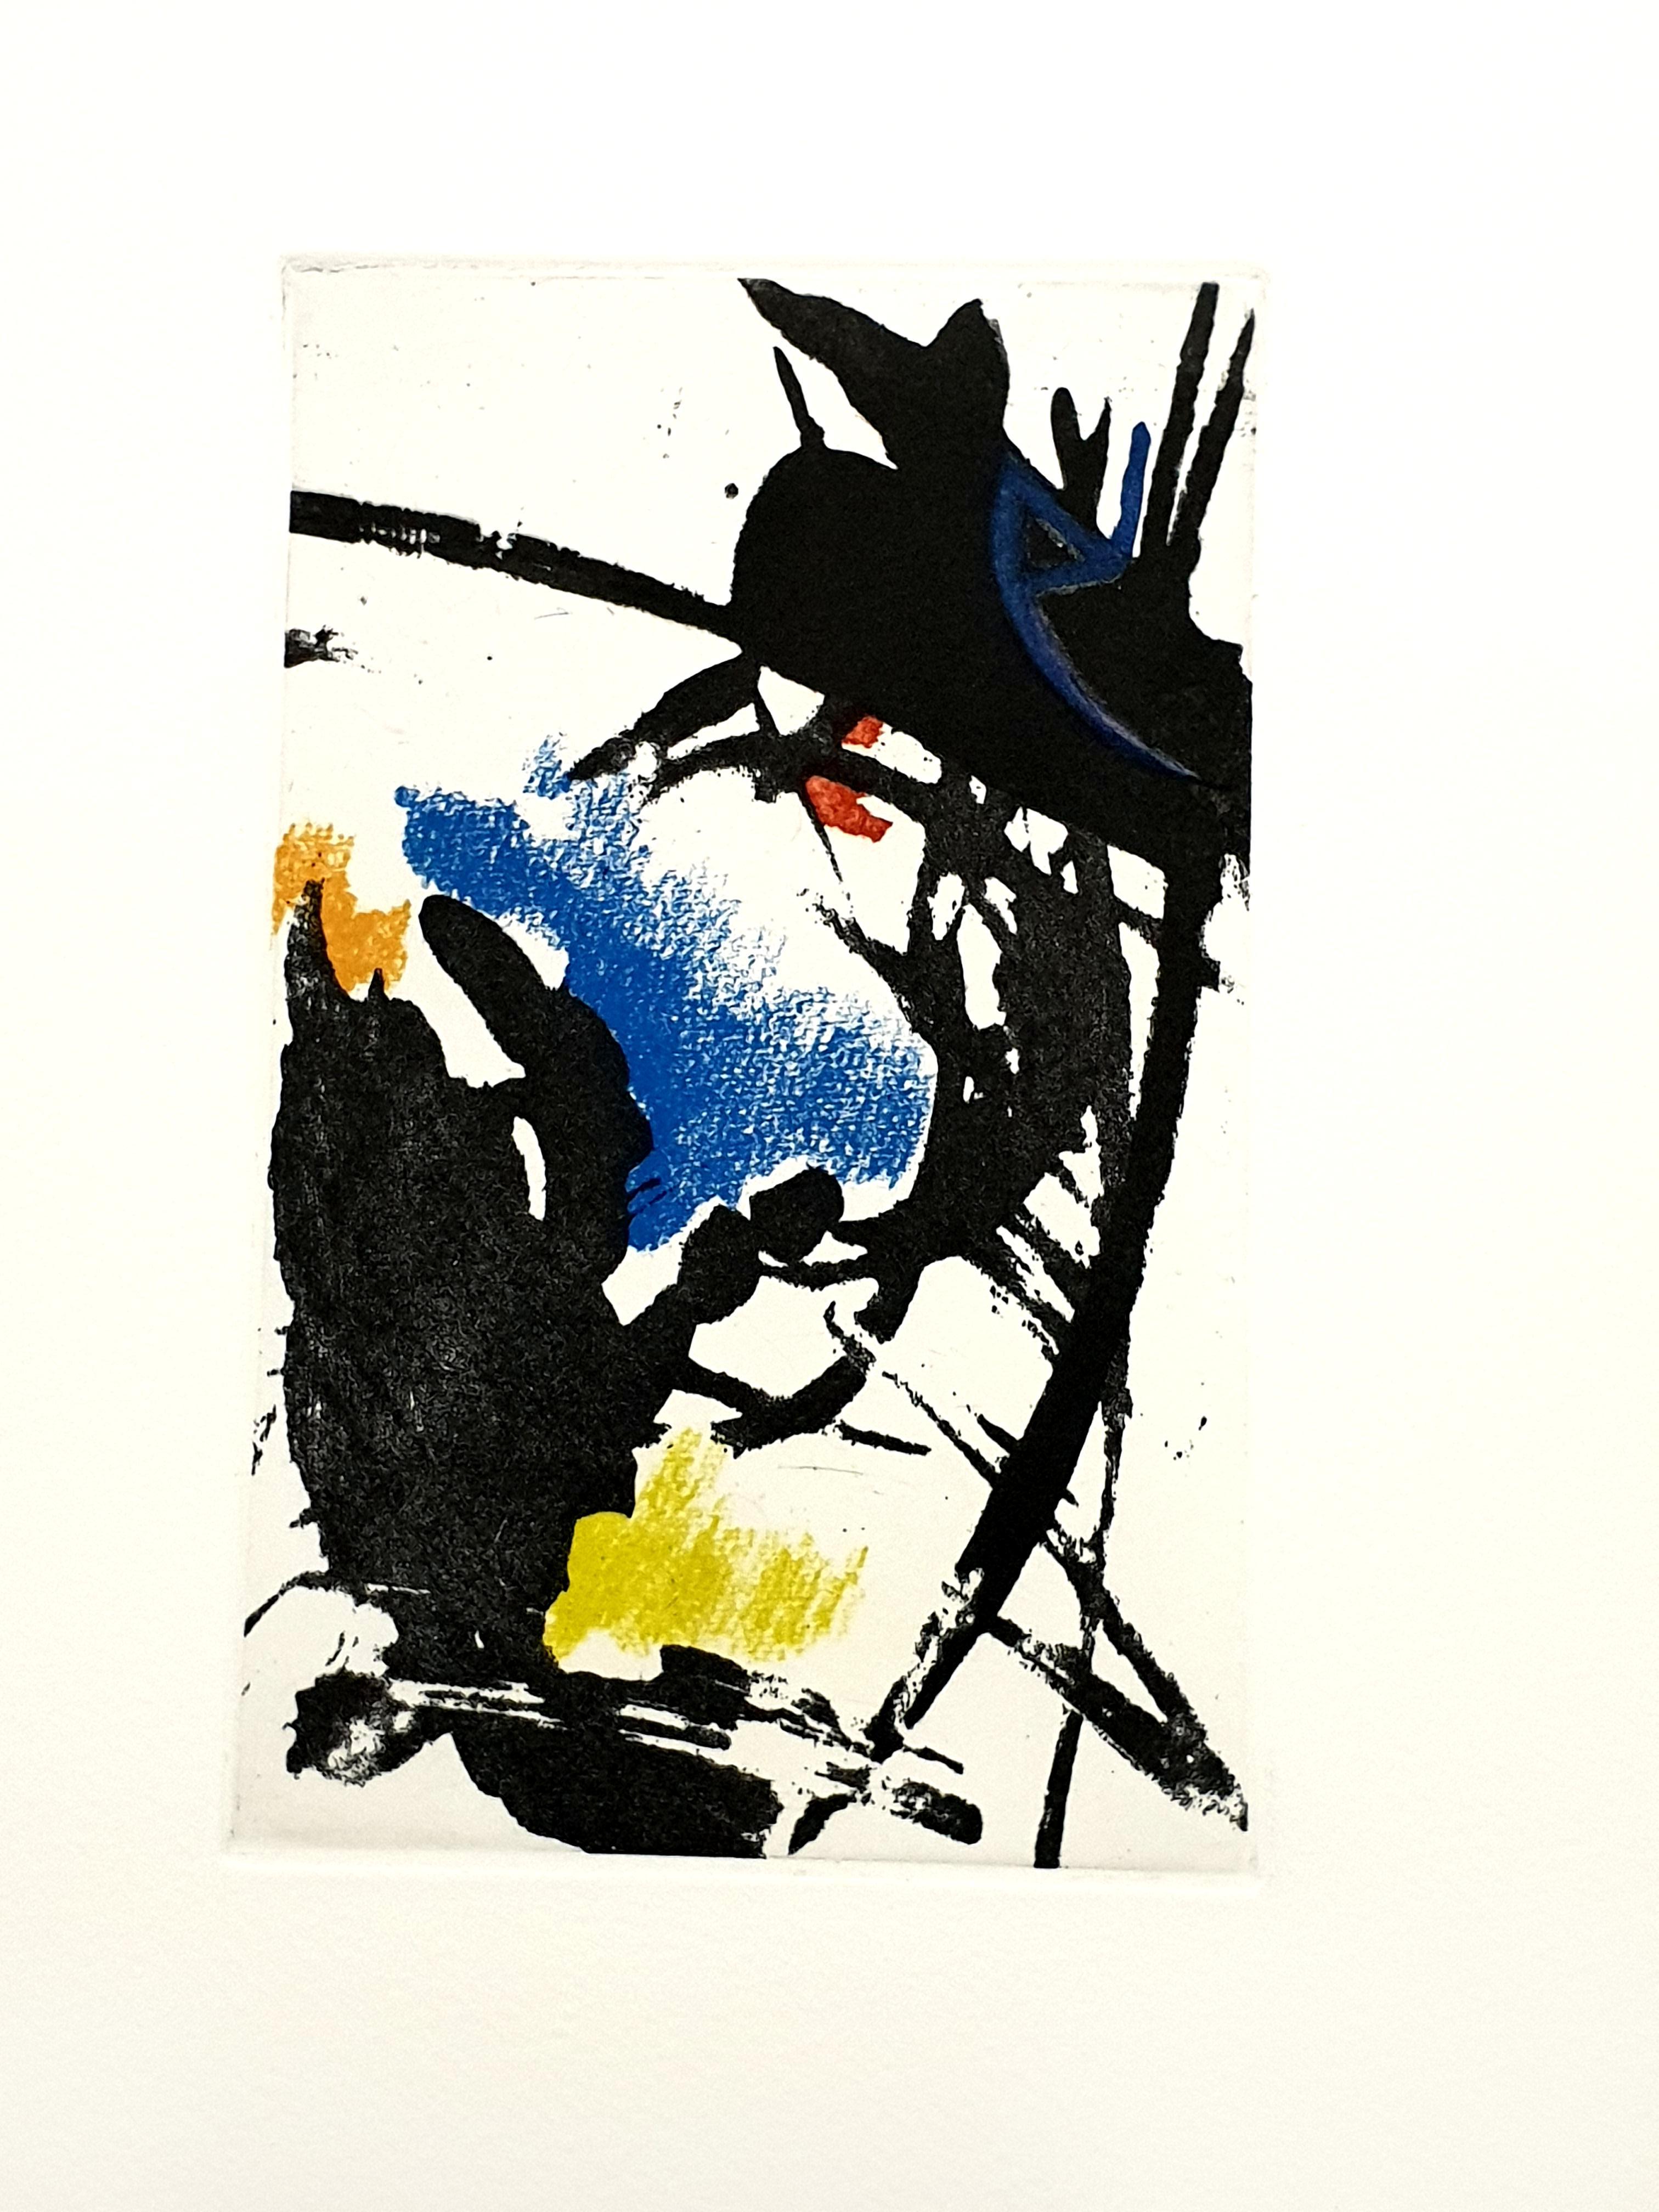 Jean Miotte - Gravure originale
1998
Dimensions : 41 x 33 cm
Édition : /40
De La Déchirure

Jean Miotte, 1926 - 2016

Miotte a atteint sa maturité artistique dans la décennie qui a suivi la Seconde Guerre mondiale, alors que l'abstraction gestuelle